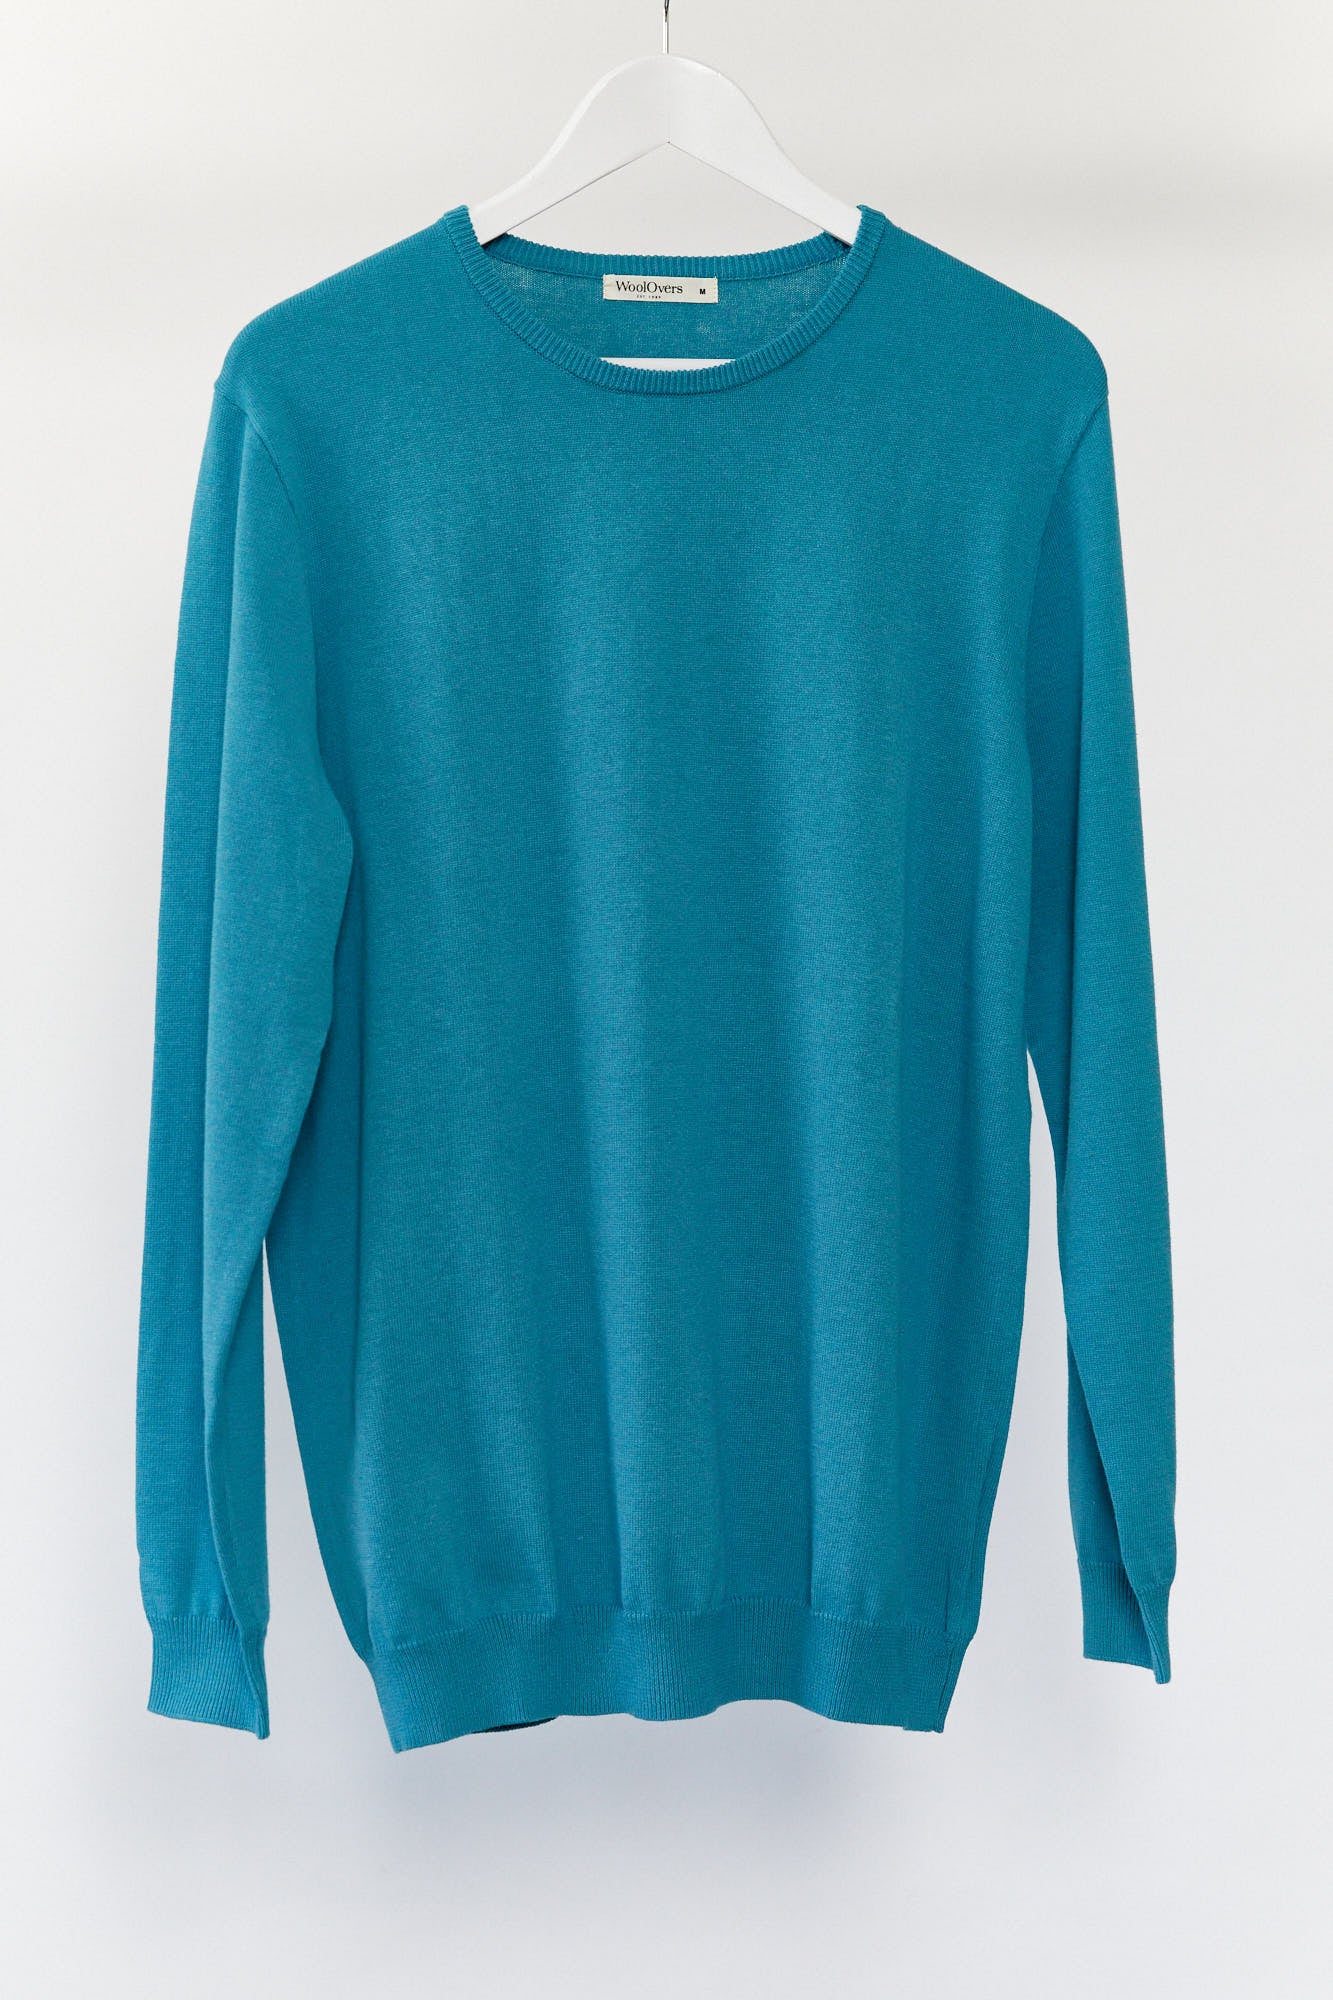 Mens WoolOvers green blue jumper size medium